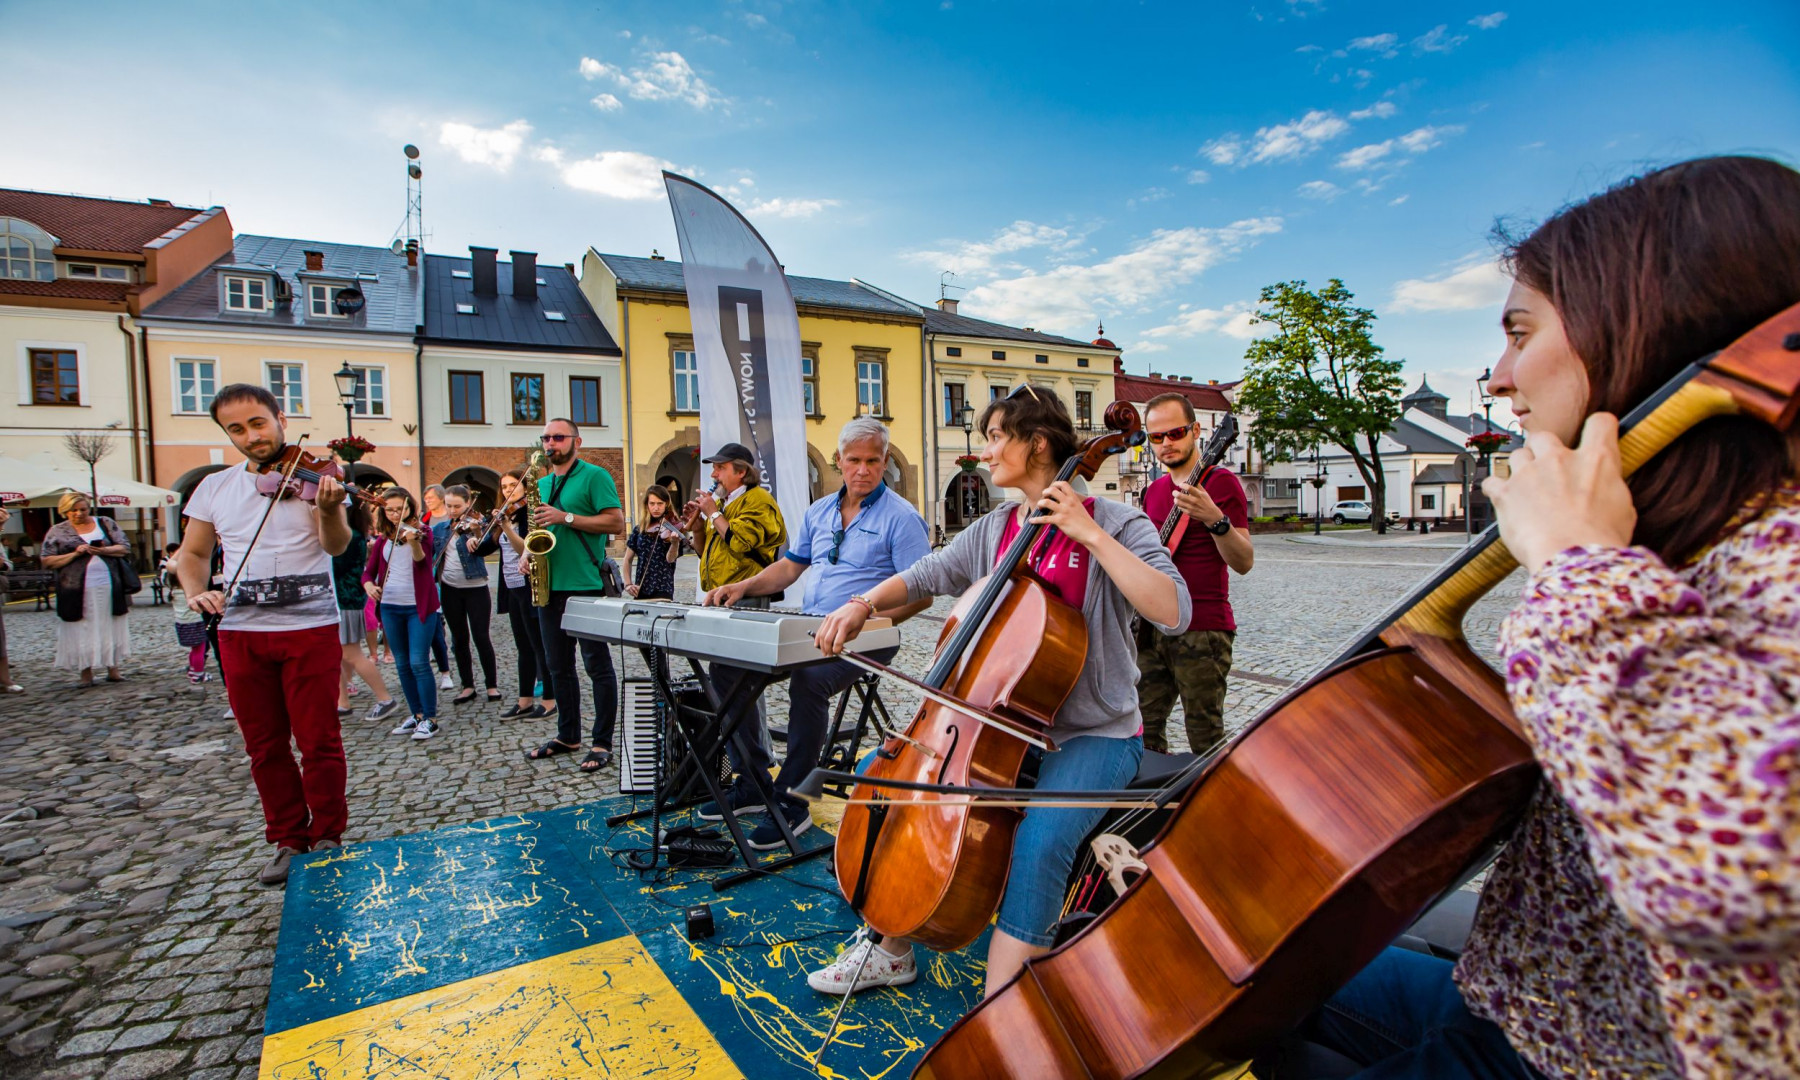 Grupa Nowy Styl wsparła Young Arts Festival. Fot. Damian Krzanowski